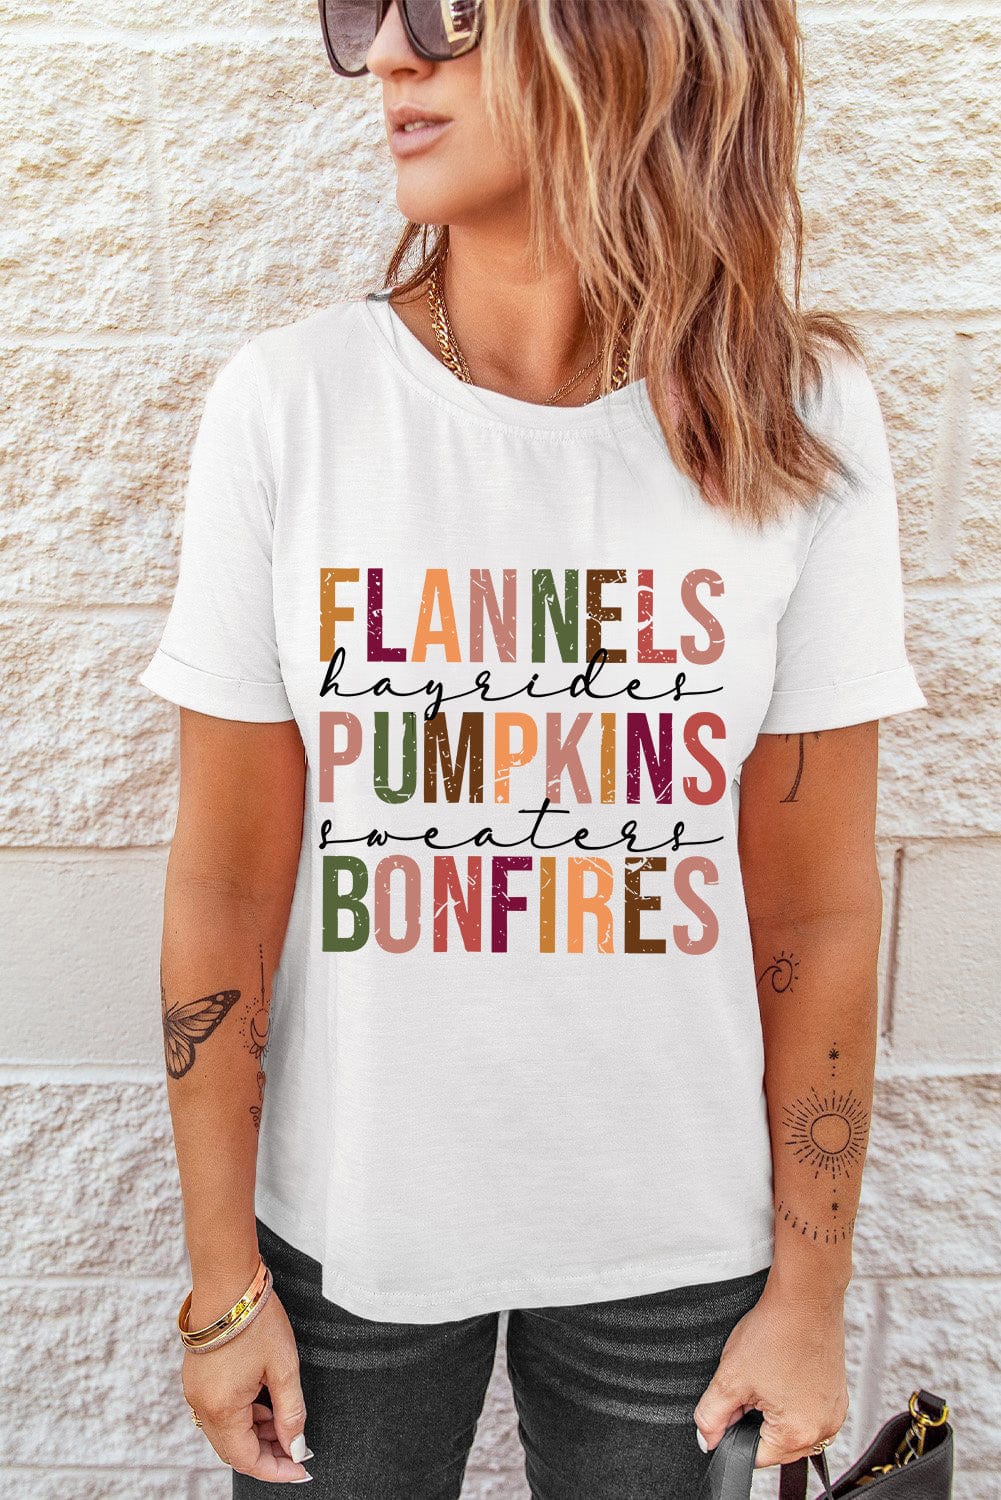 Trendsi T-Shirts FLANNELS PUMPKINS BONFIRES Graphic Tee